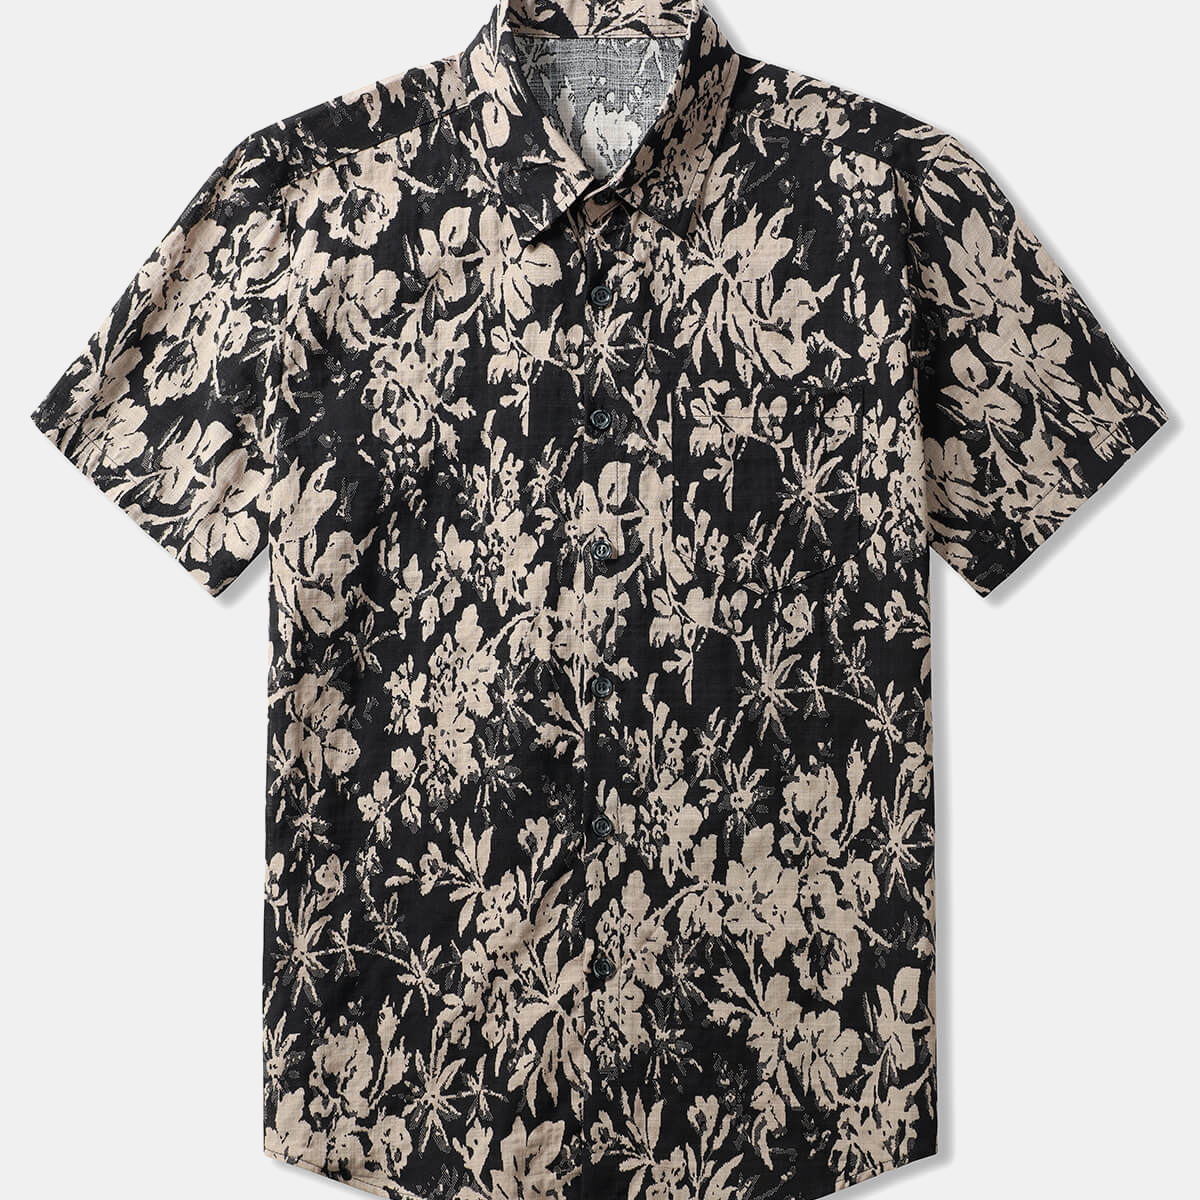 Men's Floral Vintage Pocket Short Sleeve Shirt